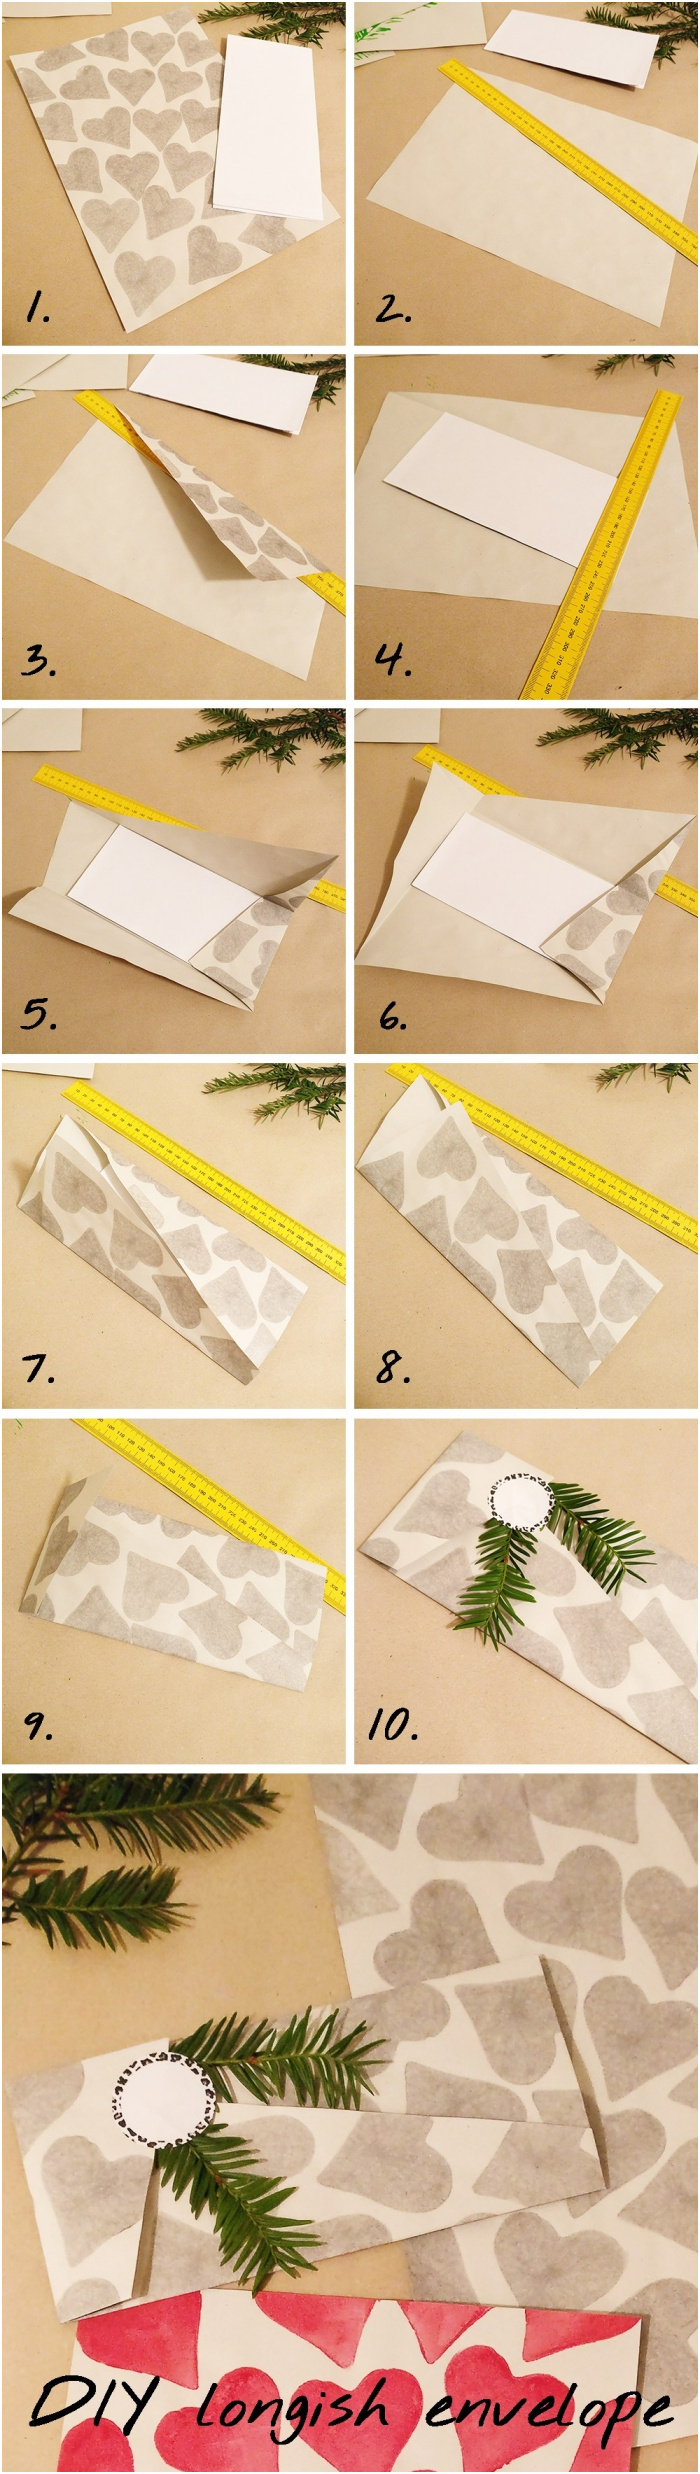 realiser une enveloppe origami pour vos plus belles occasions en plus de 60 idees originales